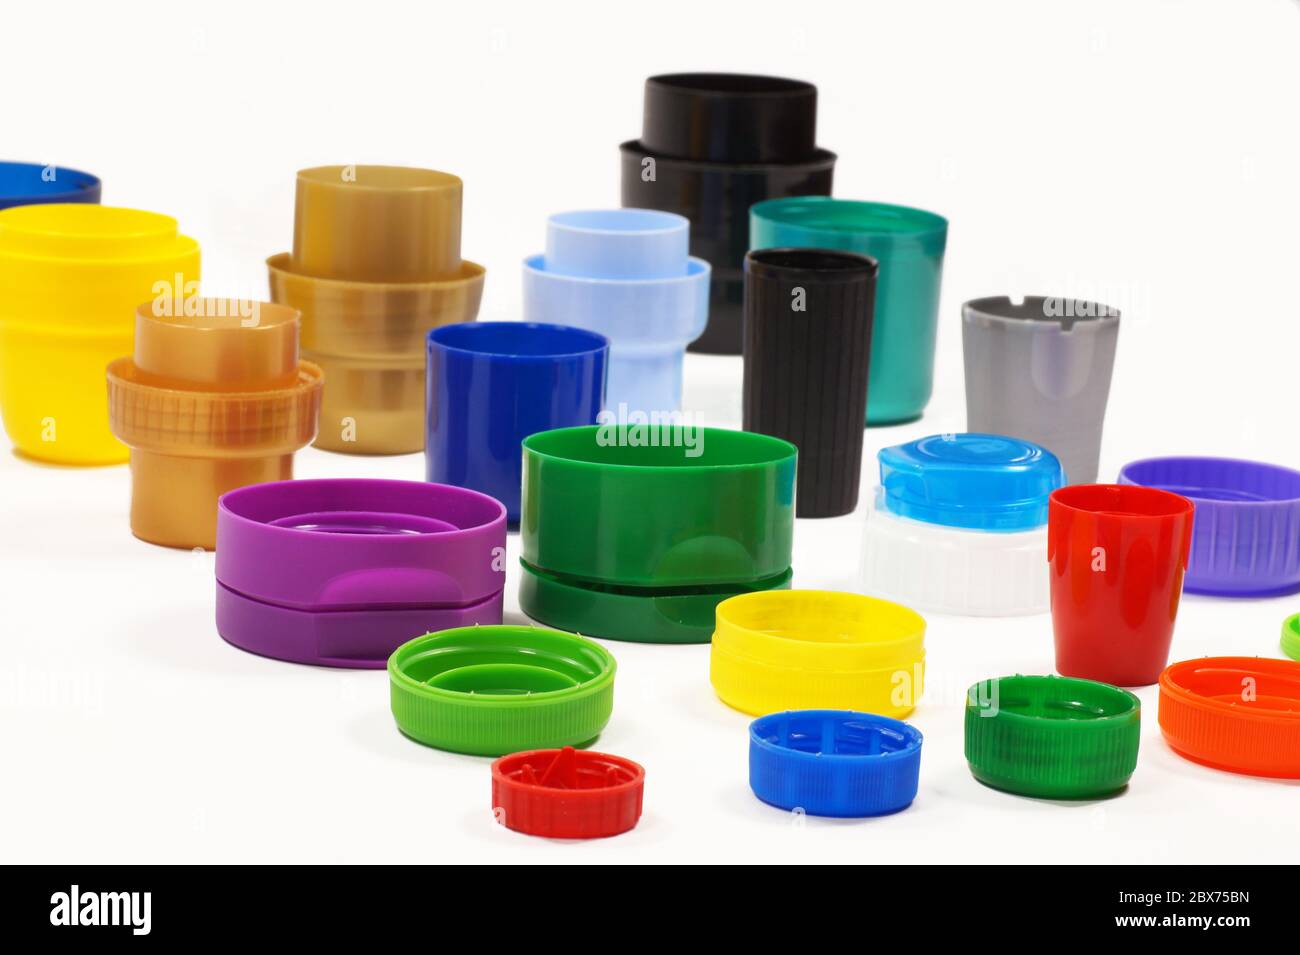 Contenitori Di Plastica Colorati Immagini e Fotos Stock - Alamy